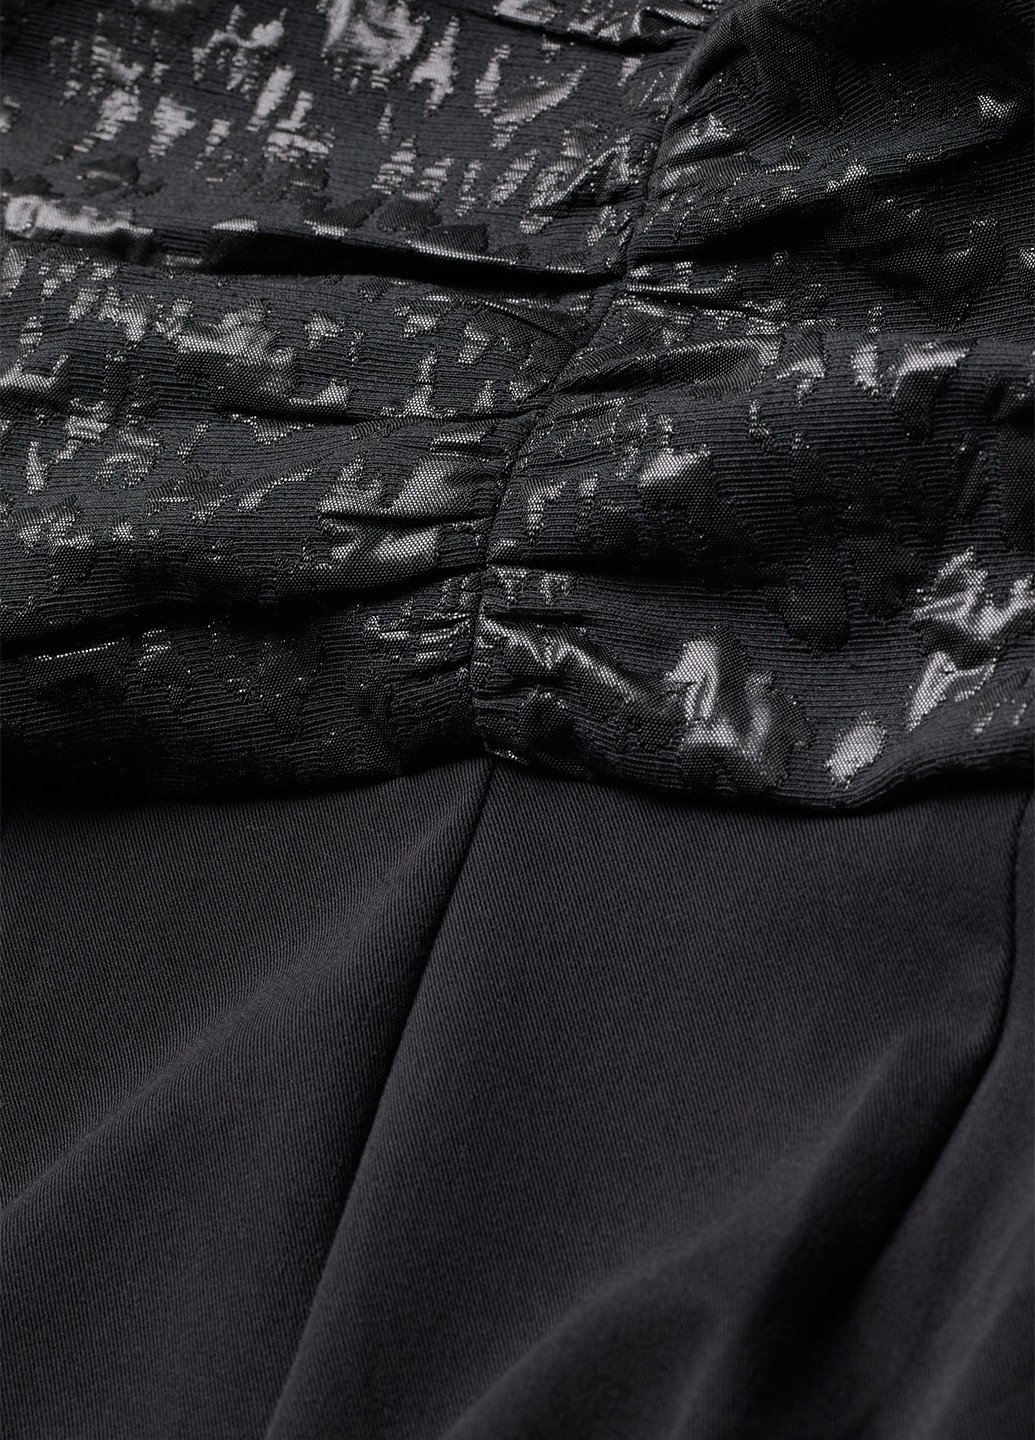 Комбинезон H&M комбинезон-брюки однотонный чёрный праздничный вискоза, жаккард